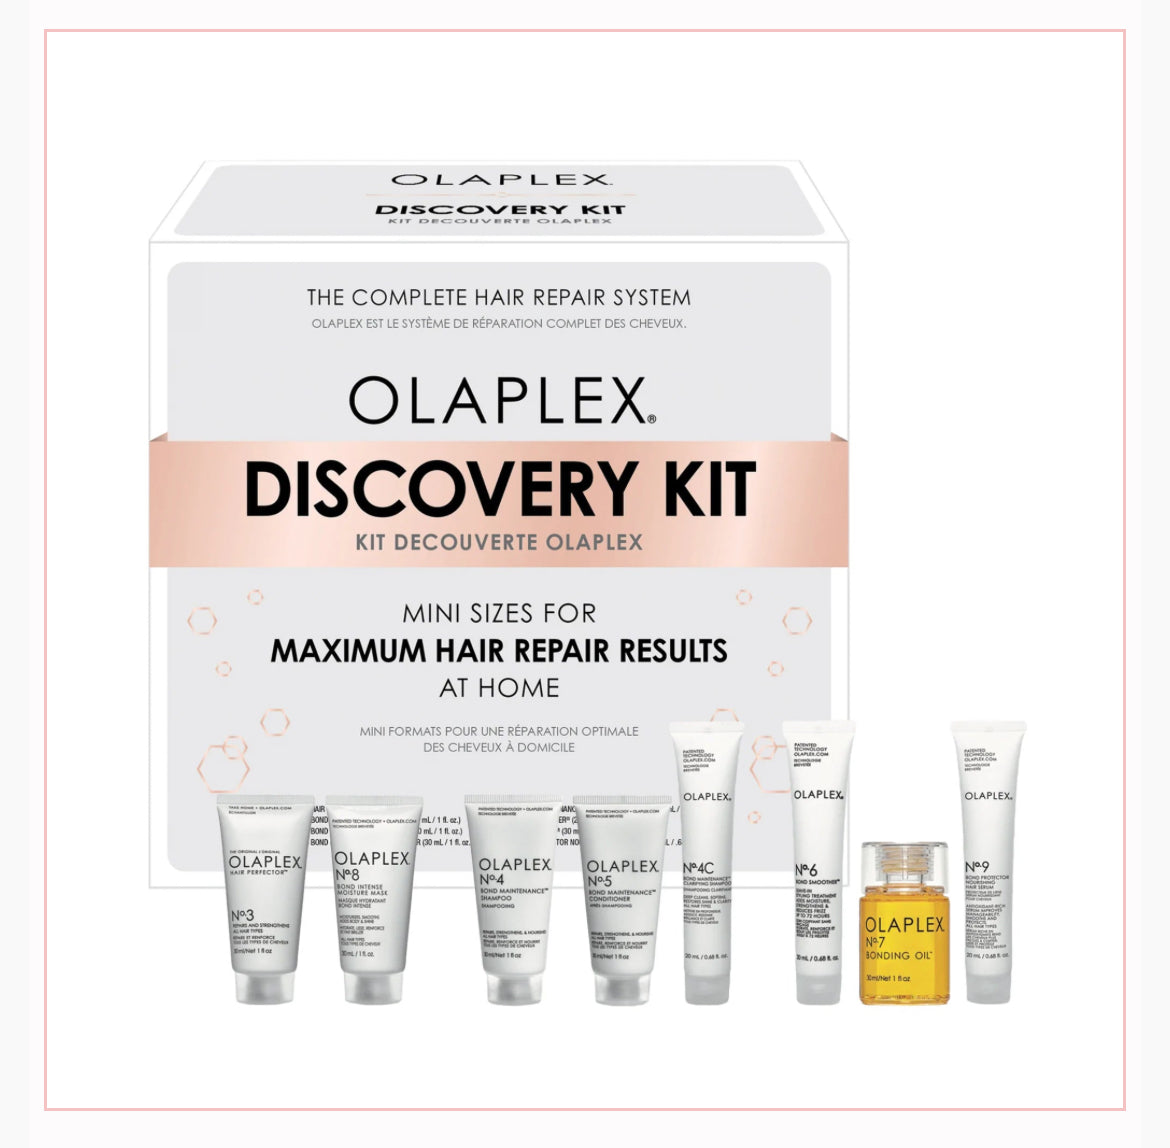 Olaplex Discovery Kit (Was £39.99) Now £24.99